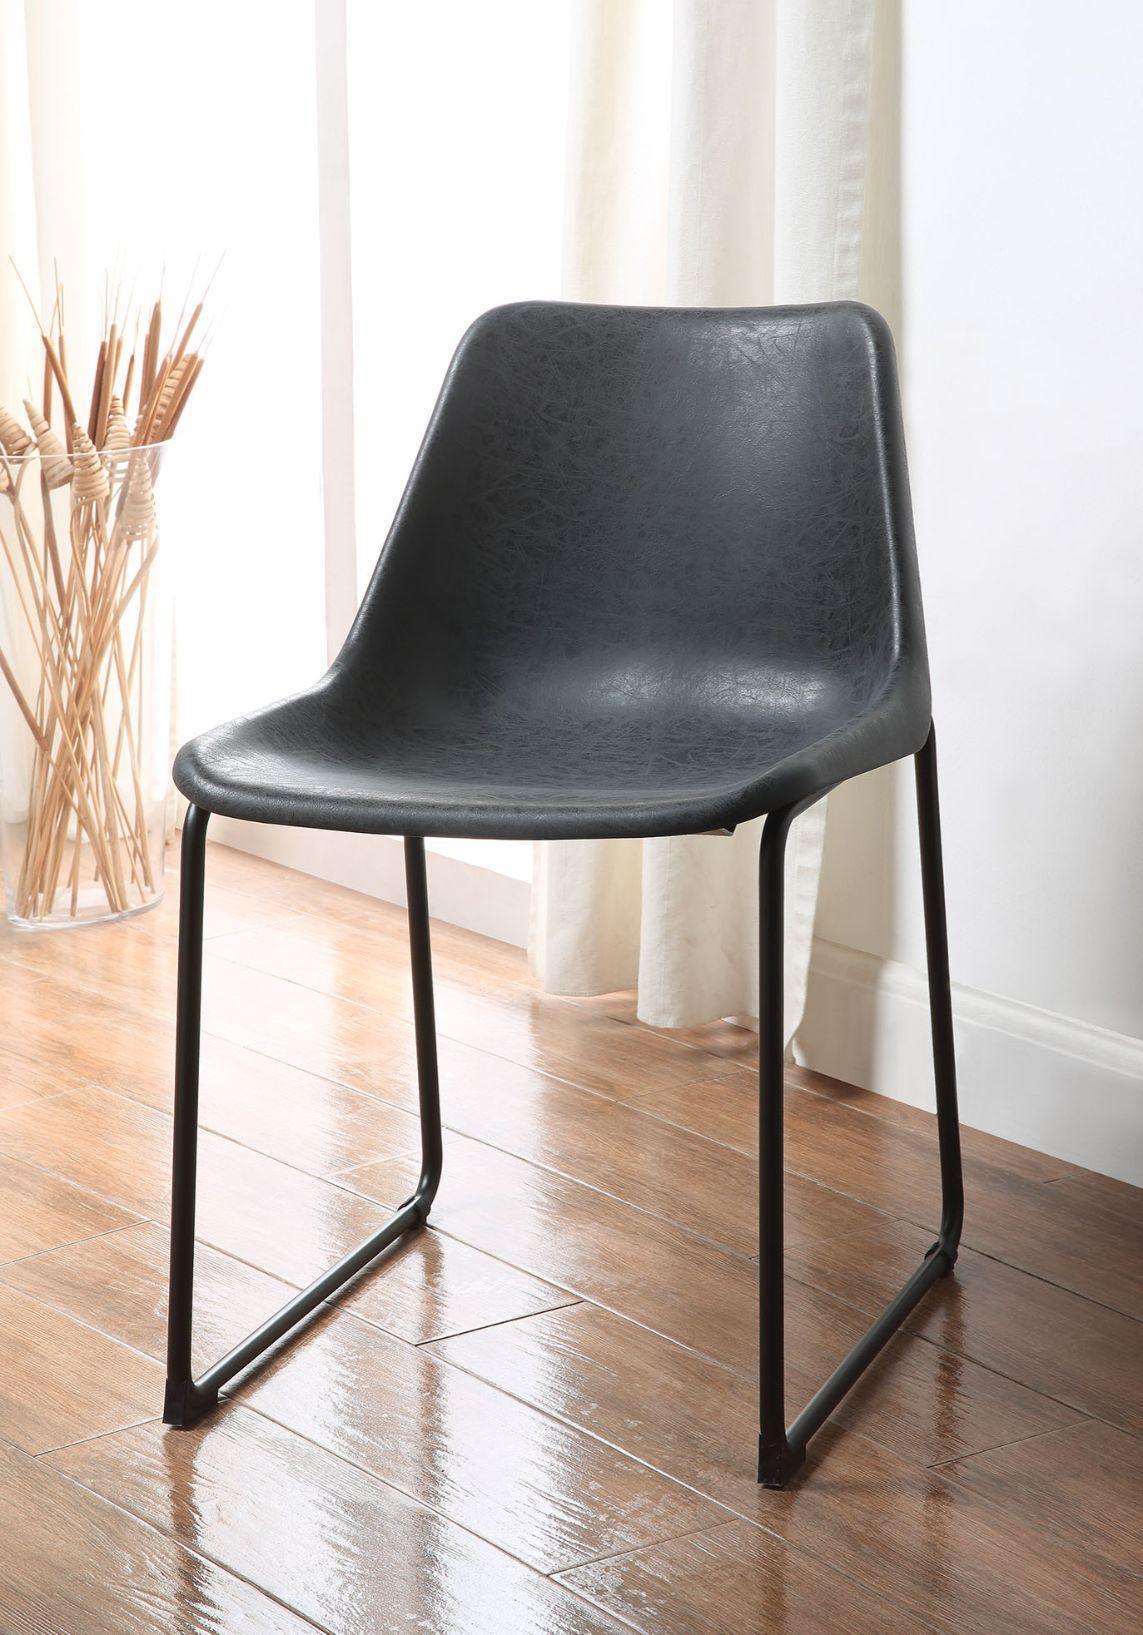 ACME - Valgus - Side Chair - 5th Avenue Furniture